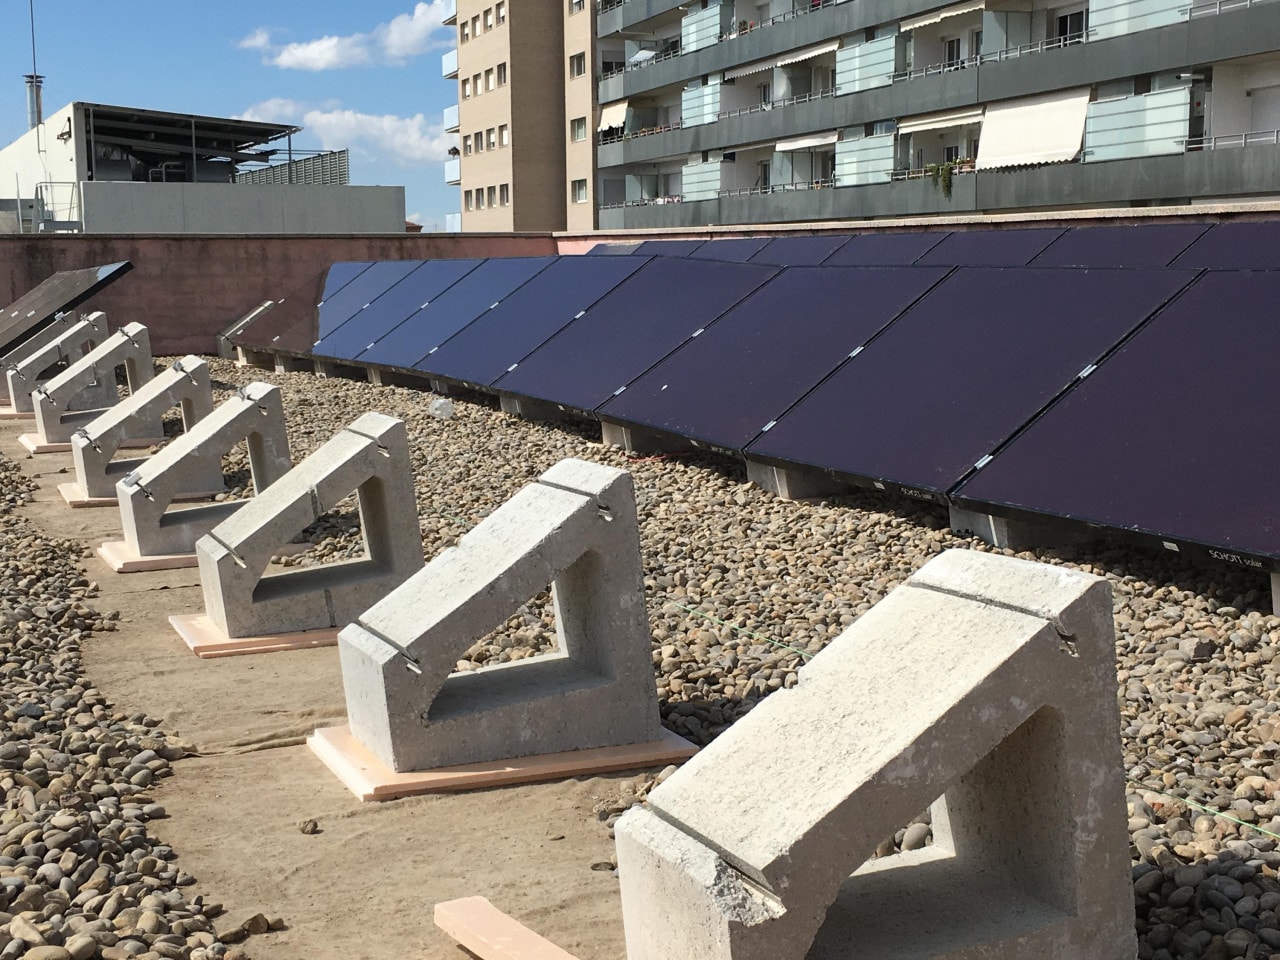 Alumnos de la Universidad Politécnica de Cataluña instalan placas fotovoltaicas para autoconsumo energético